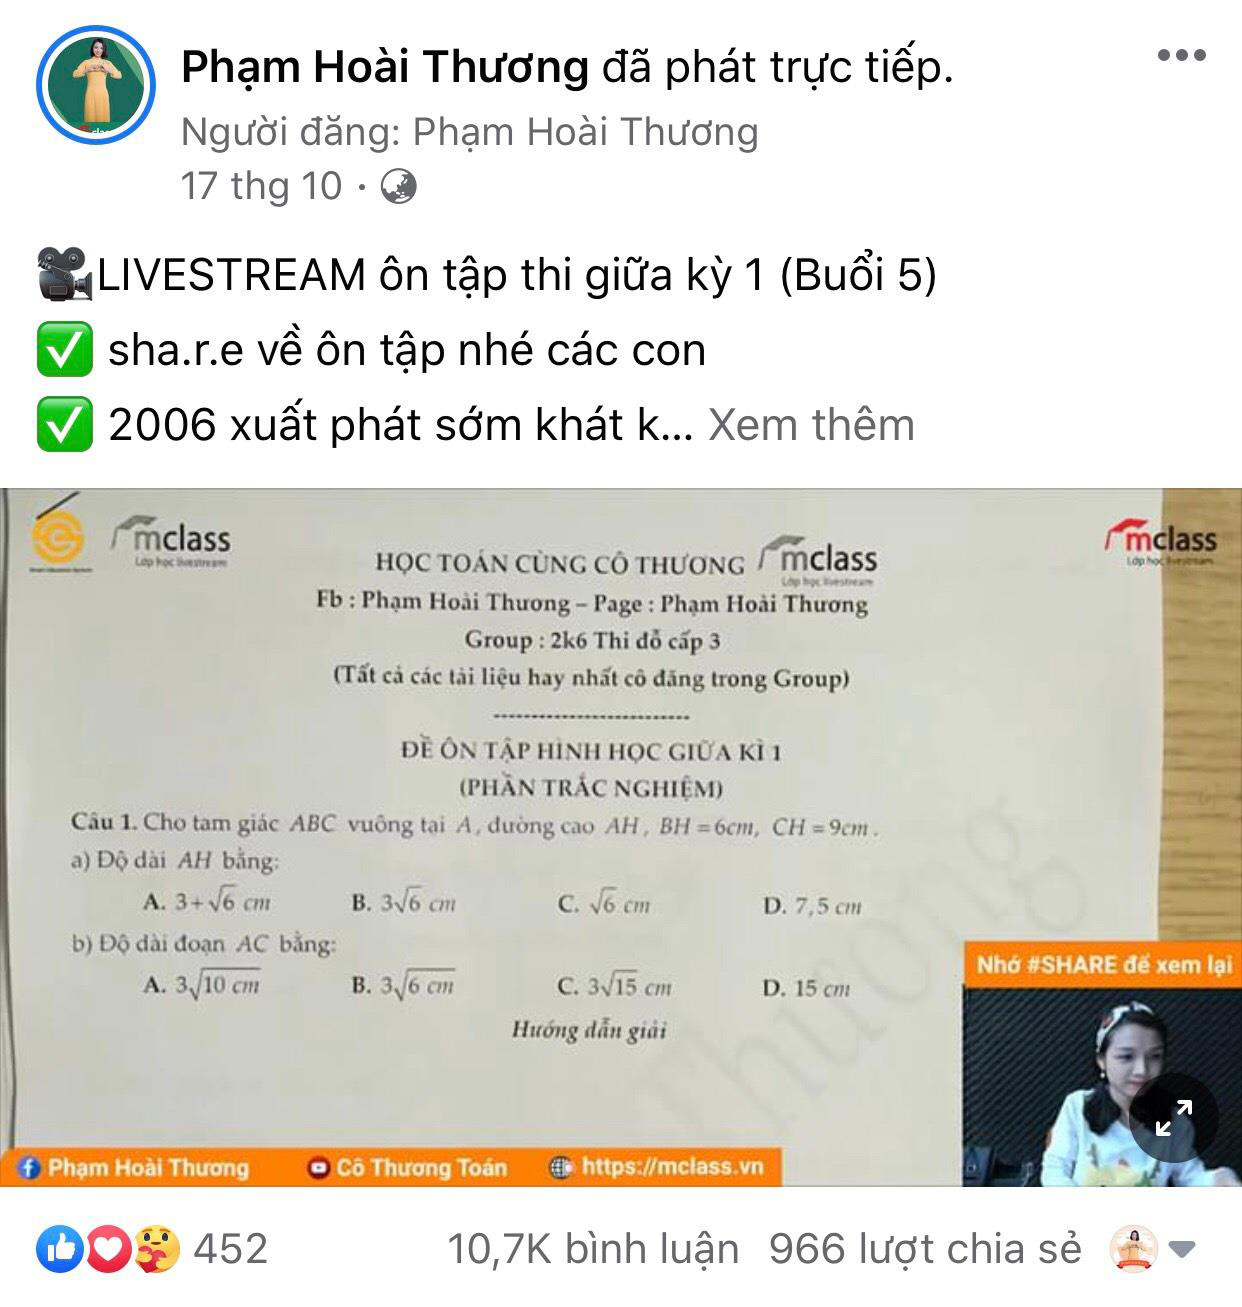 Cô giáo dạy Toán livestream qua Facebook: Gieo chữ gieo cả yêu thương - Ảnh 3.